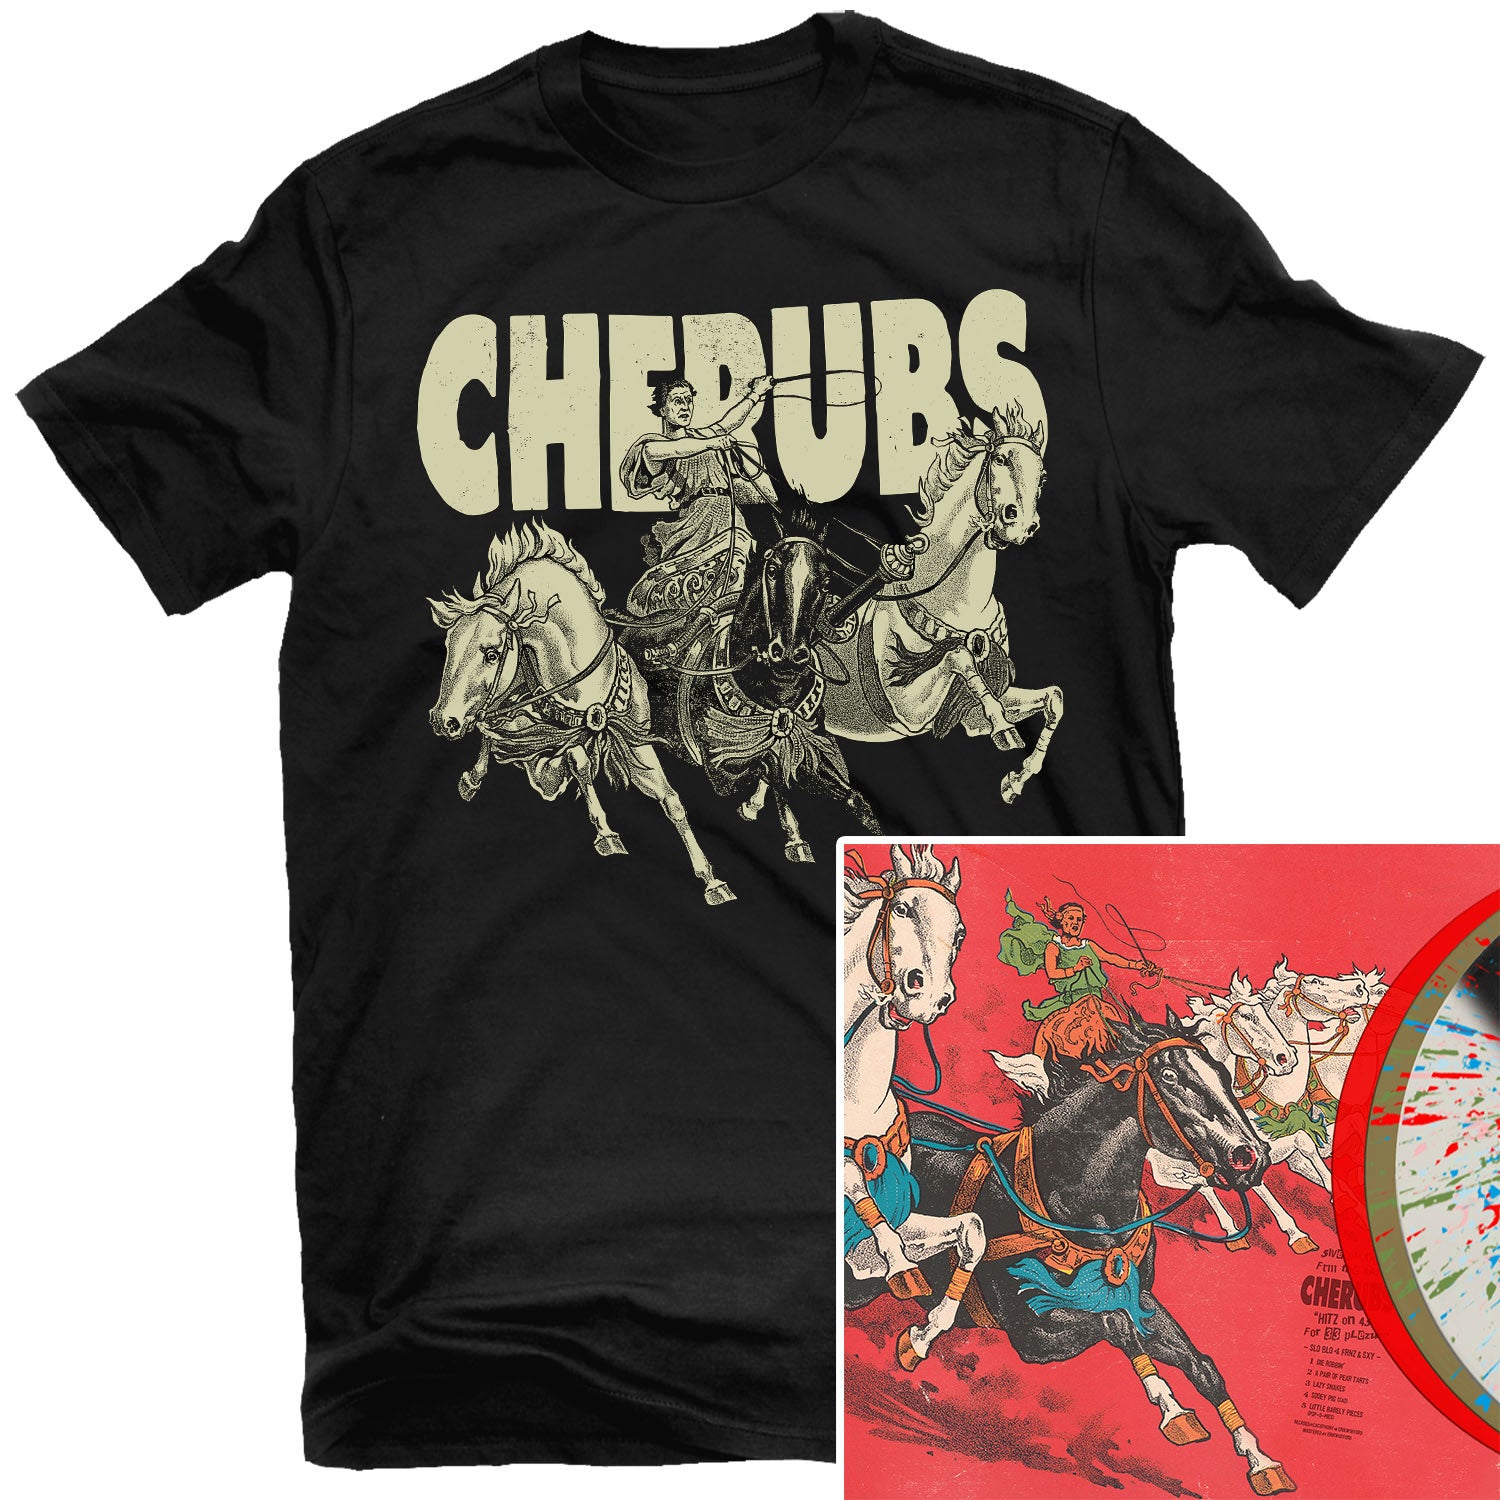 Cherubs "SLO BLO 4 FRNZ & SXY T Shirt + LP Bundle" Bundle